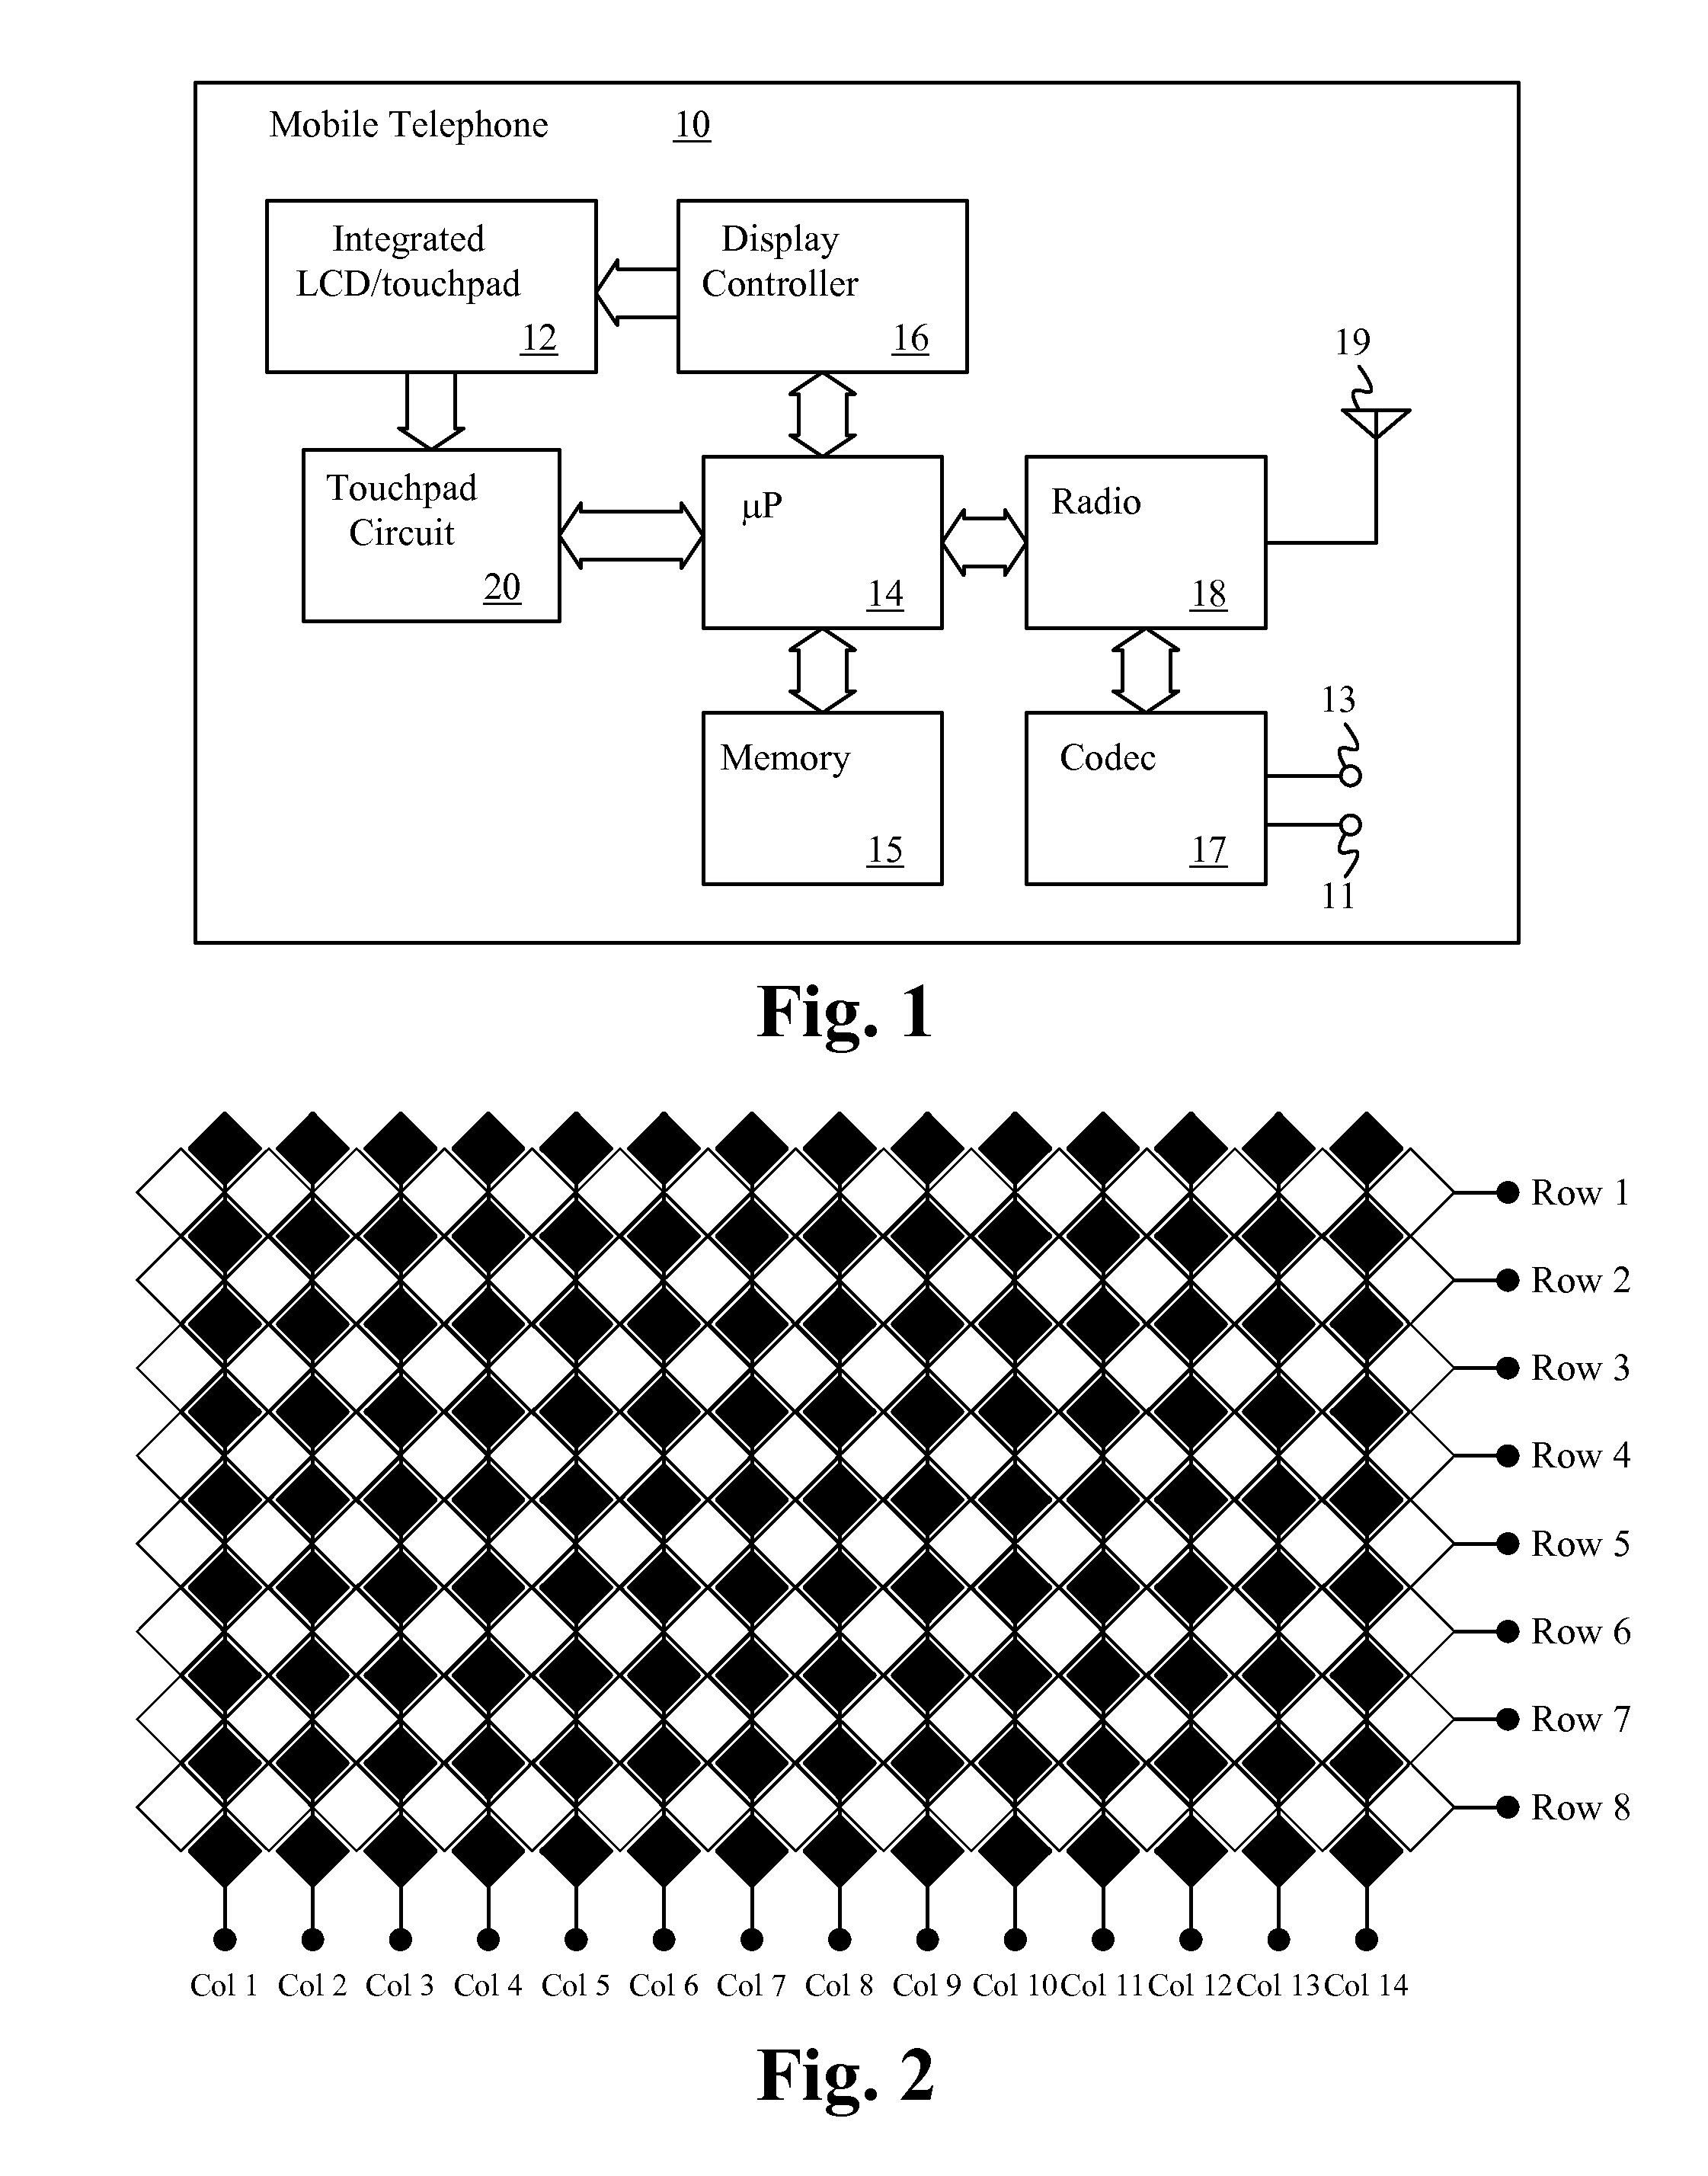 Use of random sampling technique to reduce finger-coupled noise